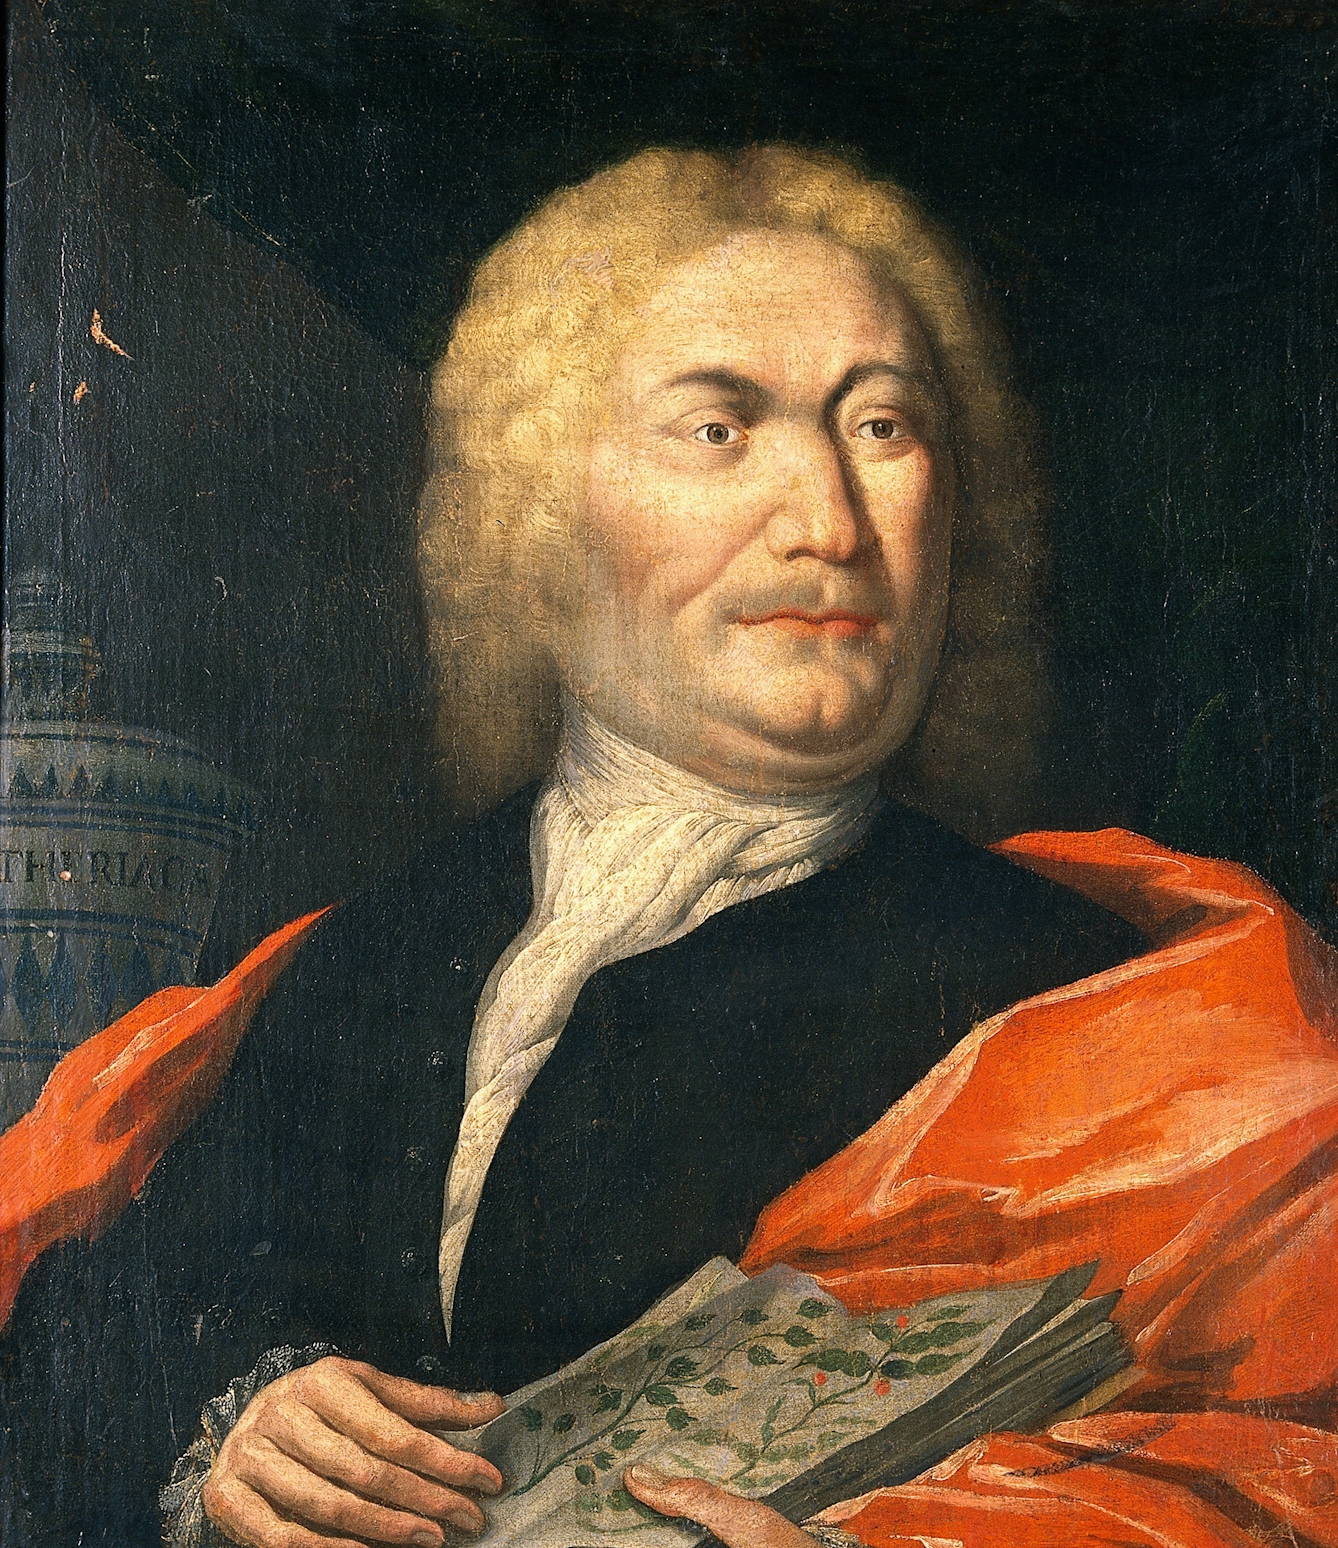 18th century portrait of a scholar